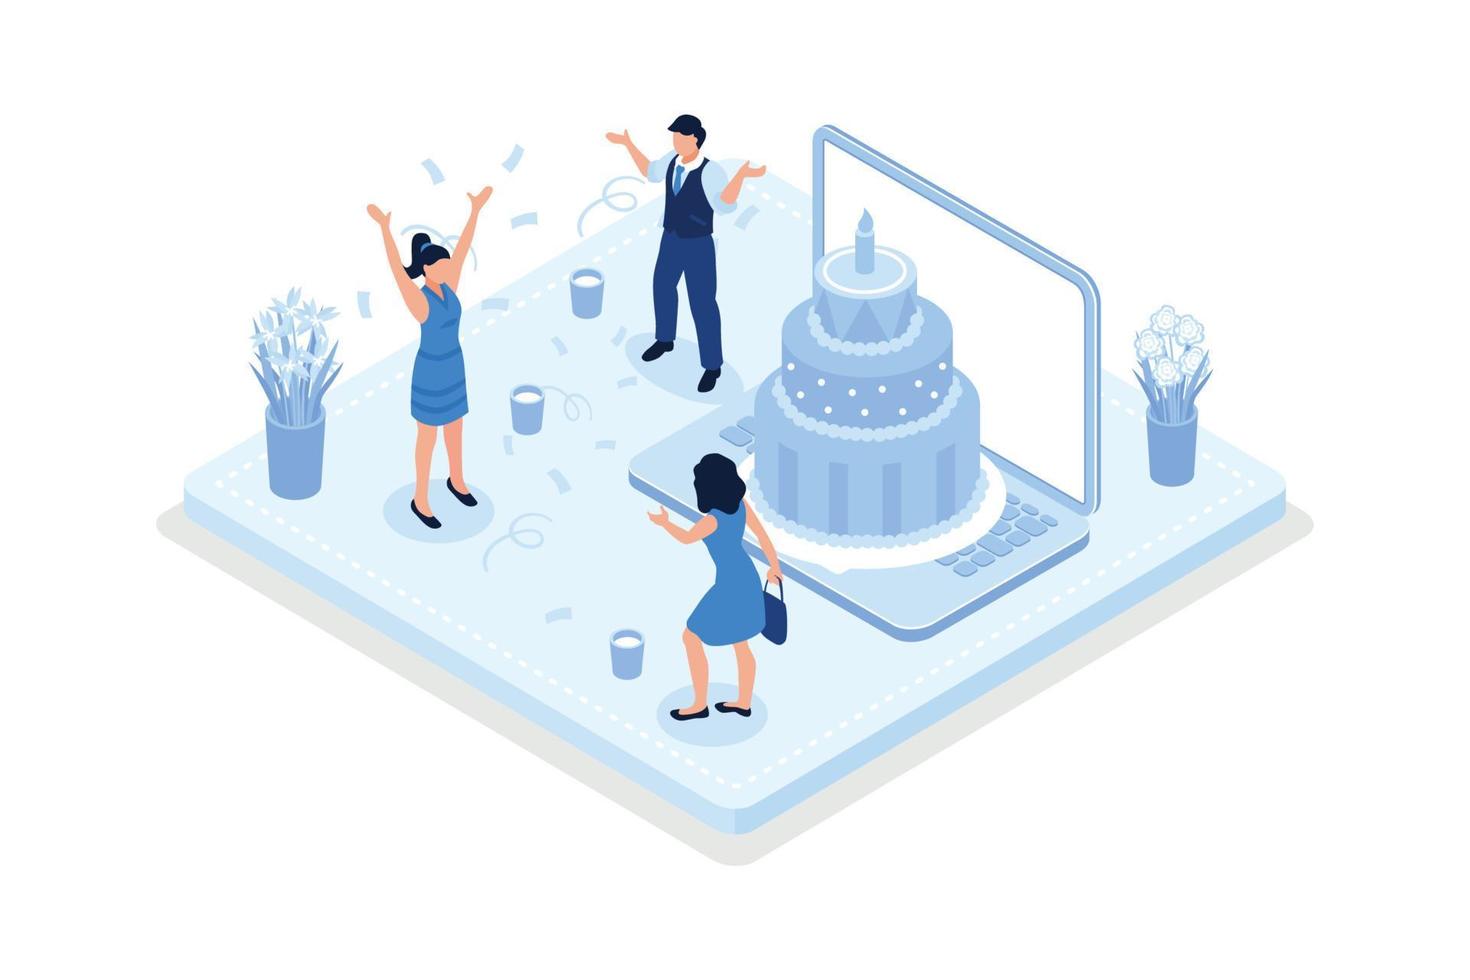 pessoas comemorando festa de aniversário, personagens em pé perto do bolo de aniversário, ilustração moderna de vetor isométrico